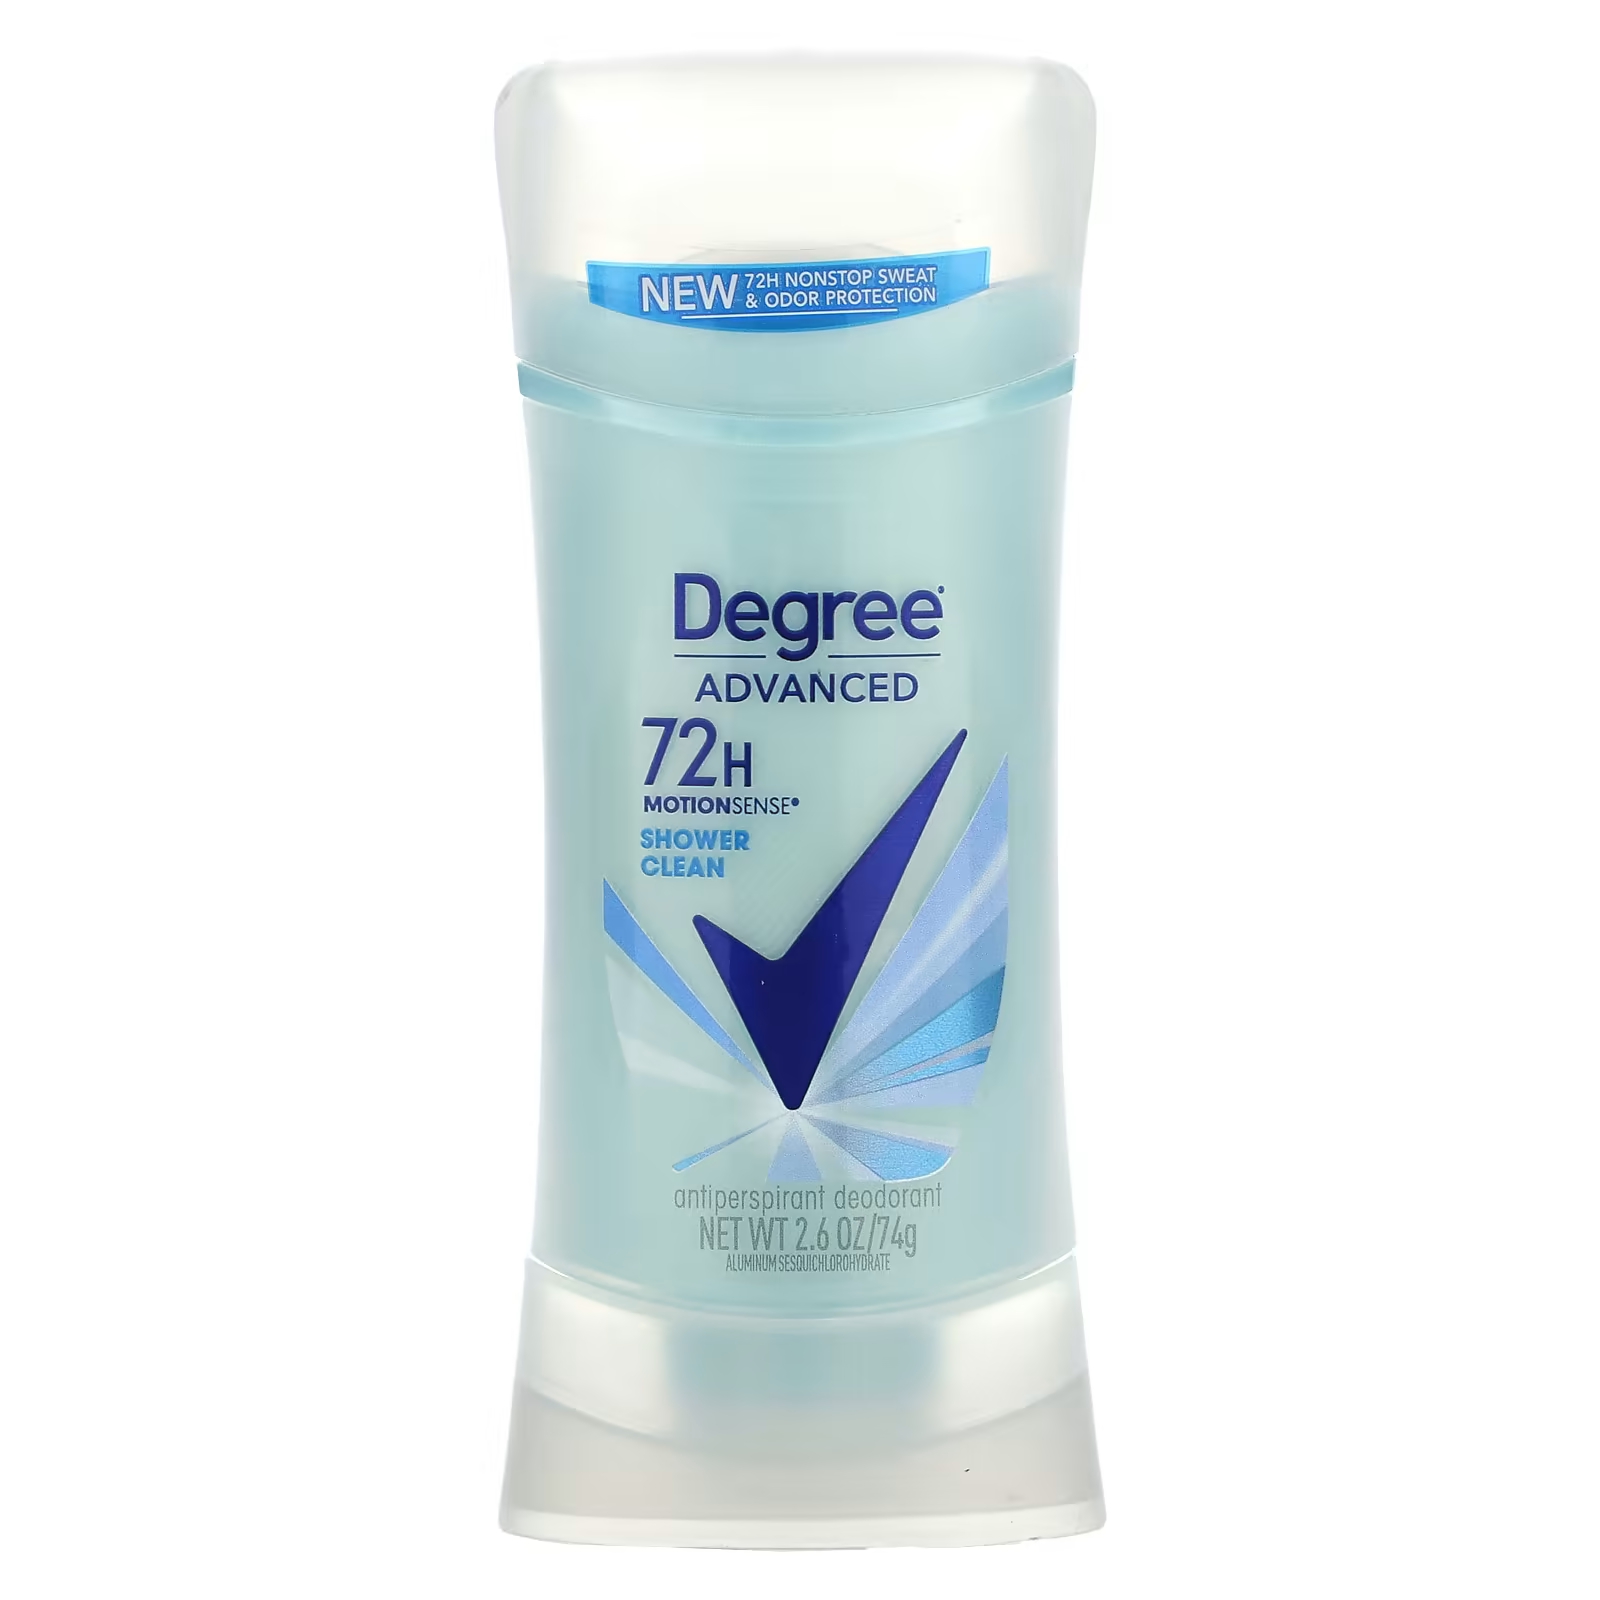 Дезодорант-антиперспирант Degree Advanced 72H MotionSense для очистки degree дезодорант антиперспирант прозрачный порошок 45 г 1 6 унции